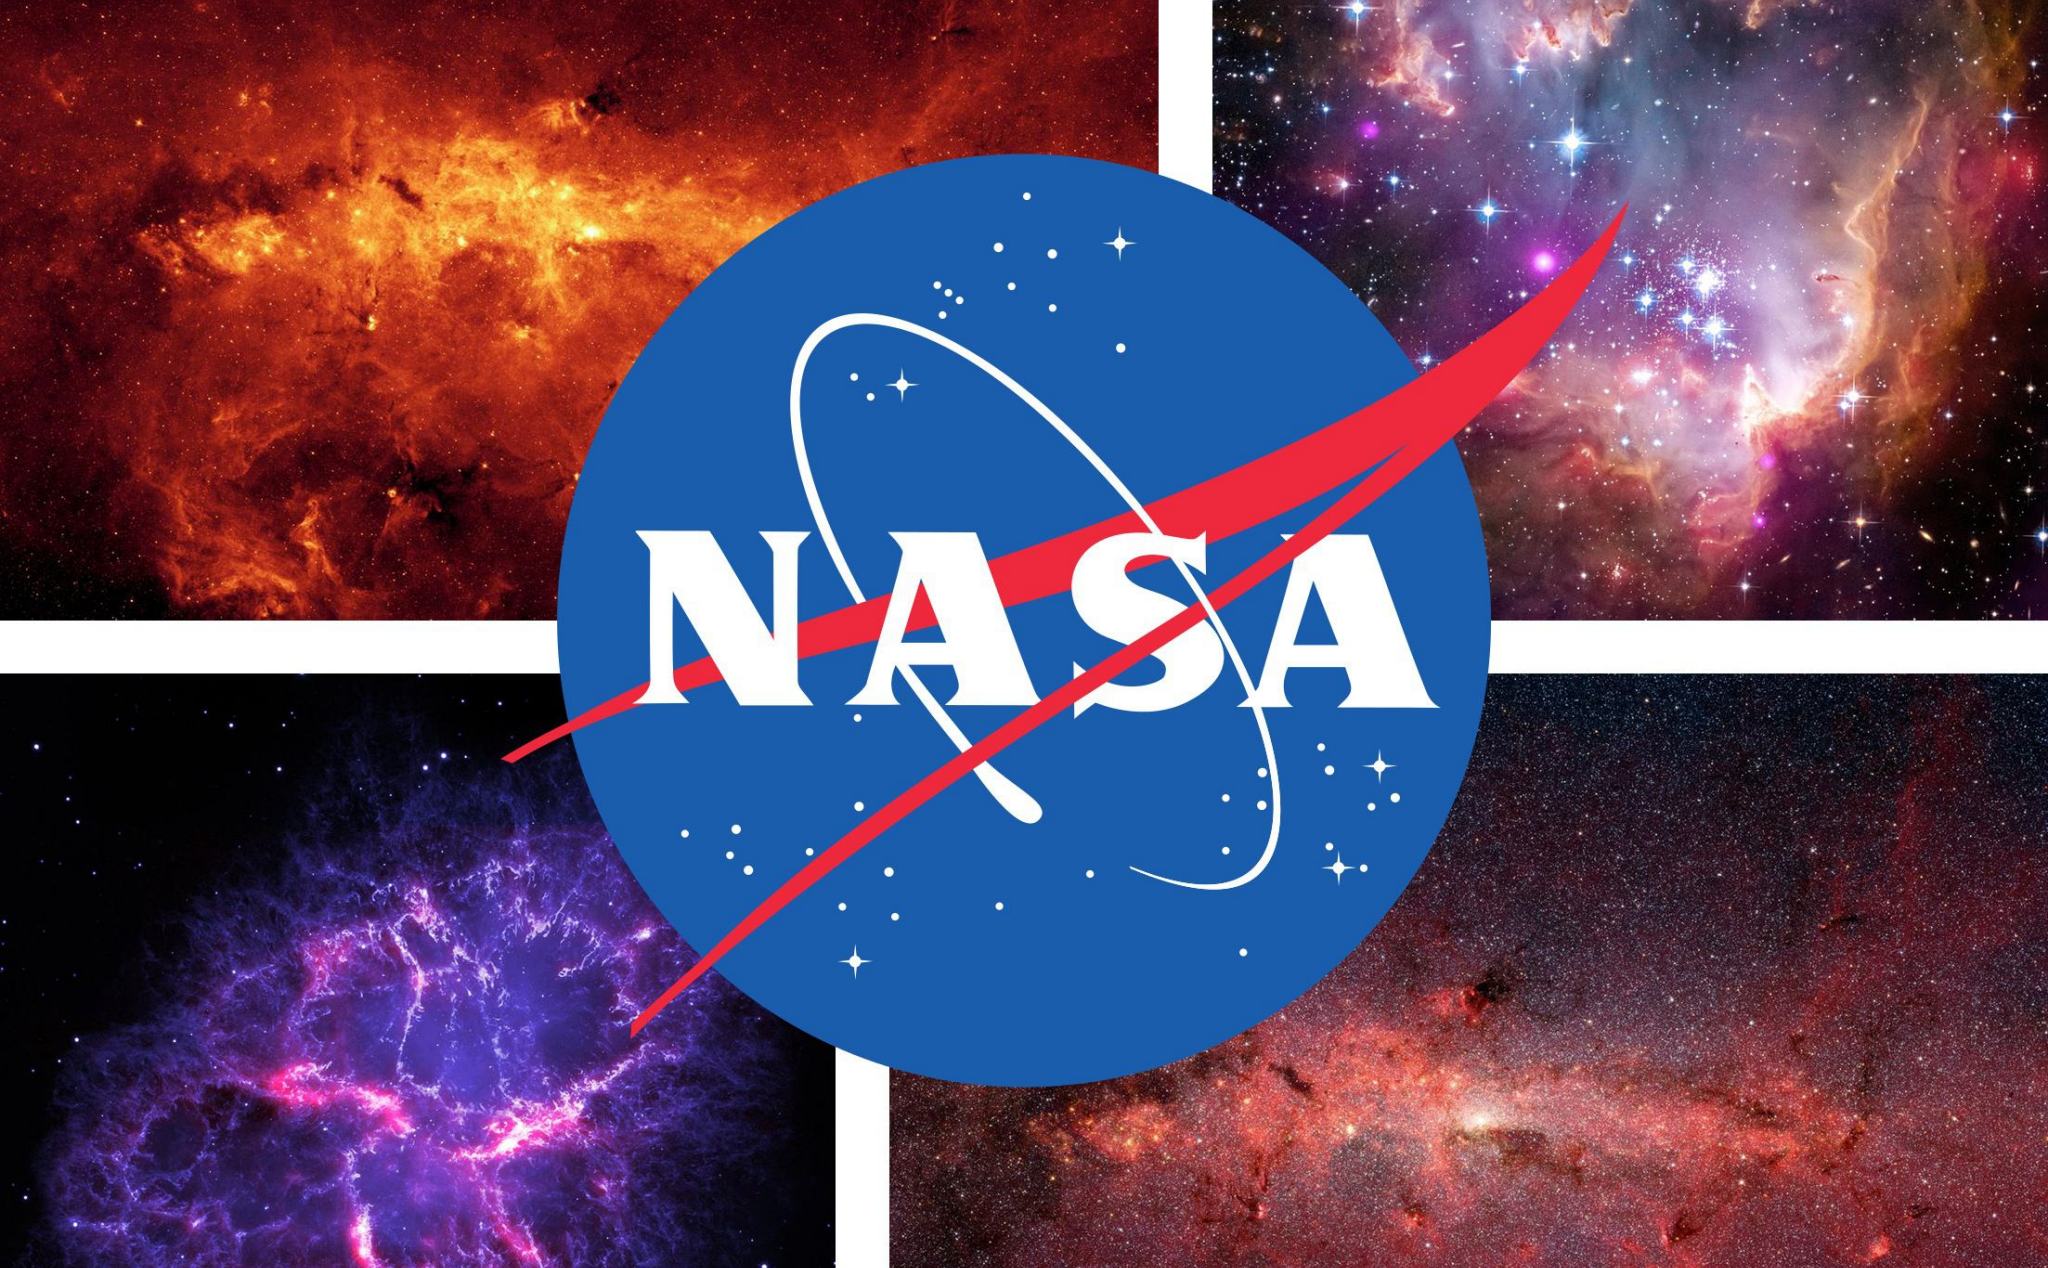 NASA: Từ những hình ảnh tuyệt đẹp về vũ trụ cho đến những thành tựu khoa học đáng kinh ngạc, tất cả đều có trong bộ sưu tập hình ảnh về NASA. Các bạn sẽ khám phá được những bí mật của vũ trụ và tầm quan trọng của công nghệ vào cuộc sống chúng ta.